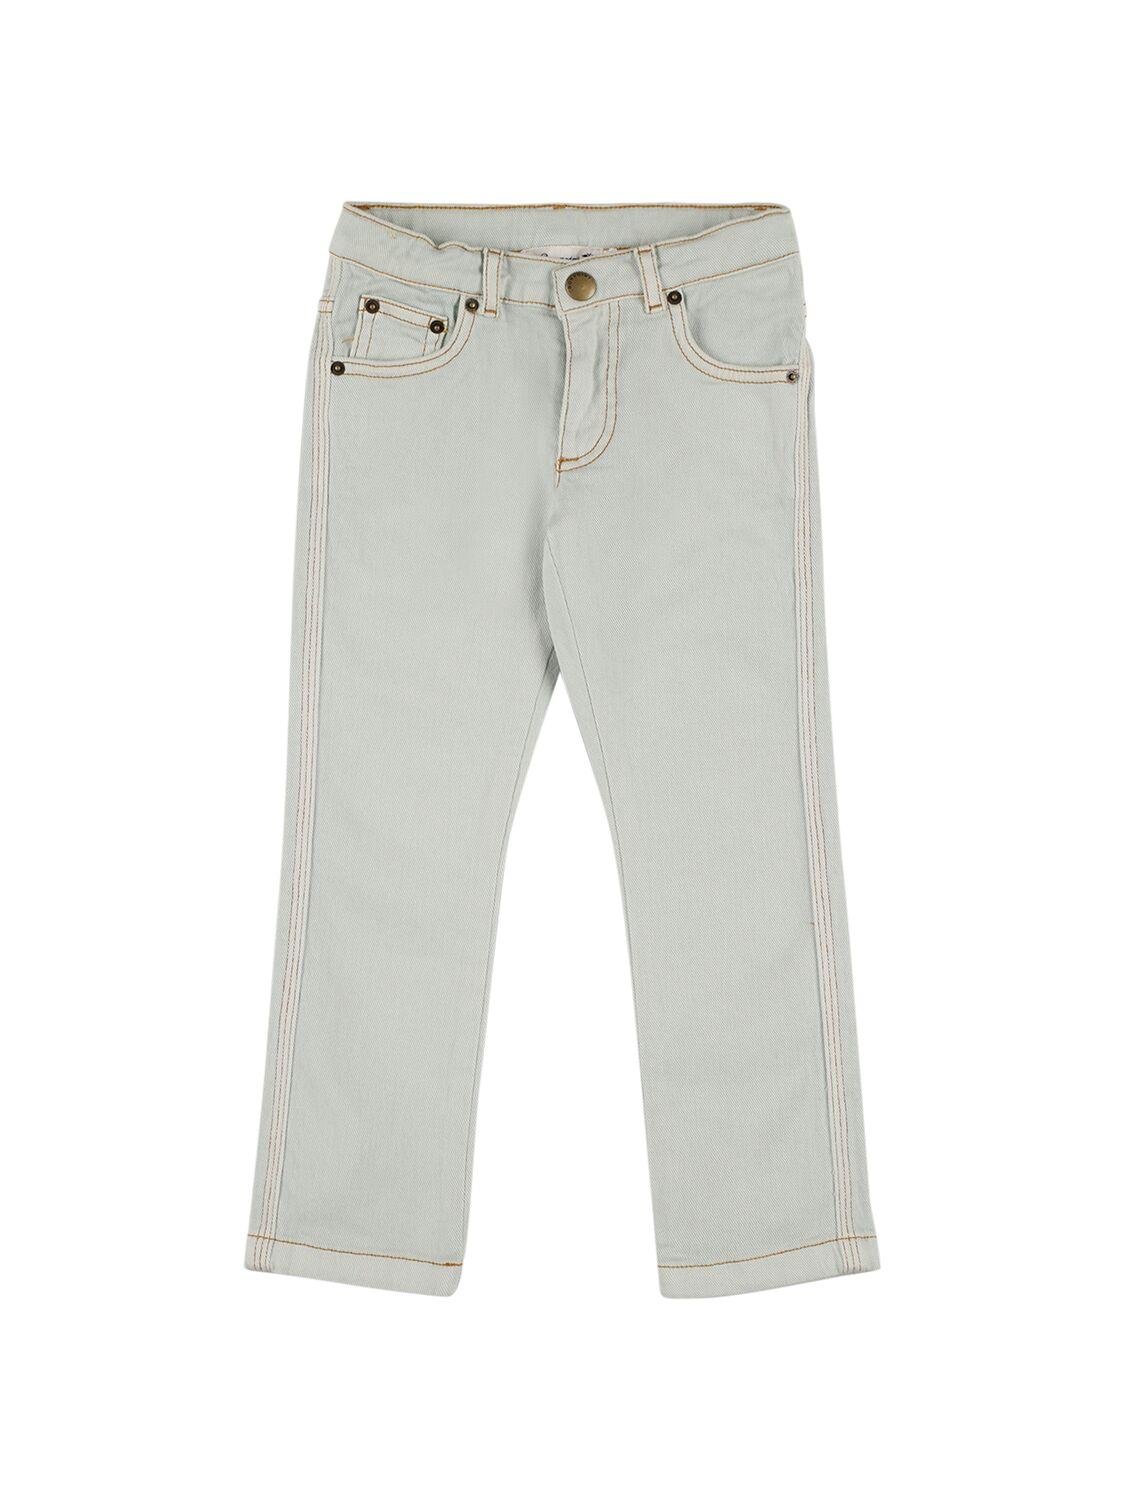 Cotton Denim Jeans by BONPOINT